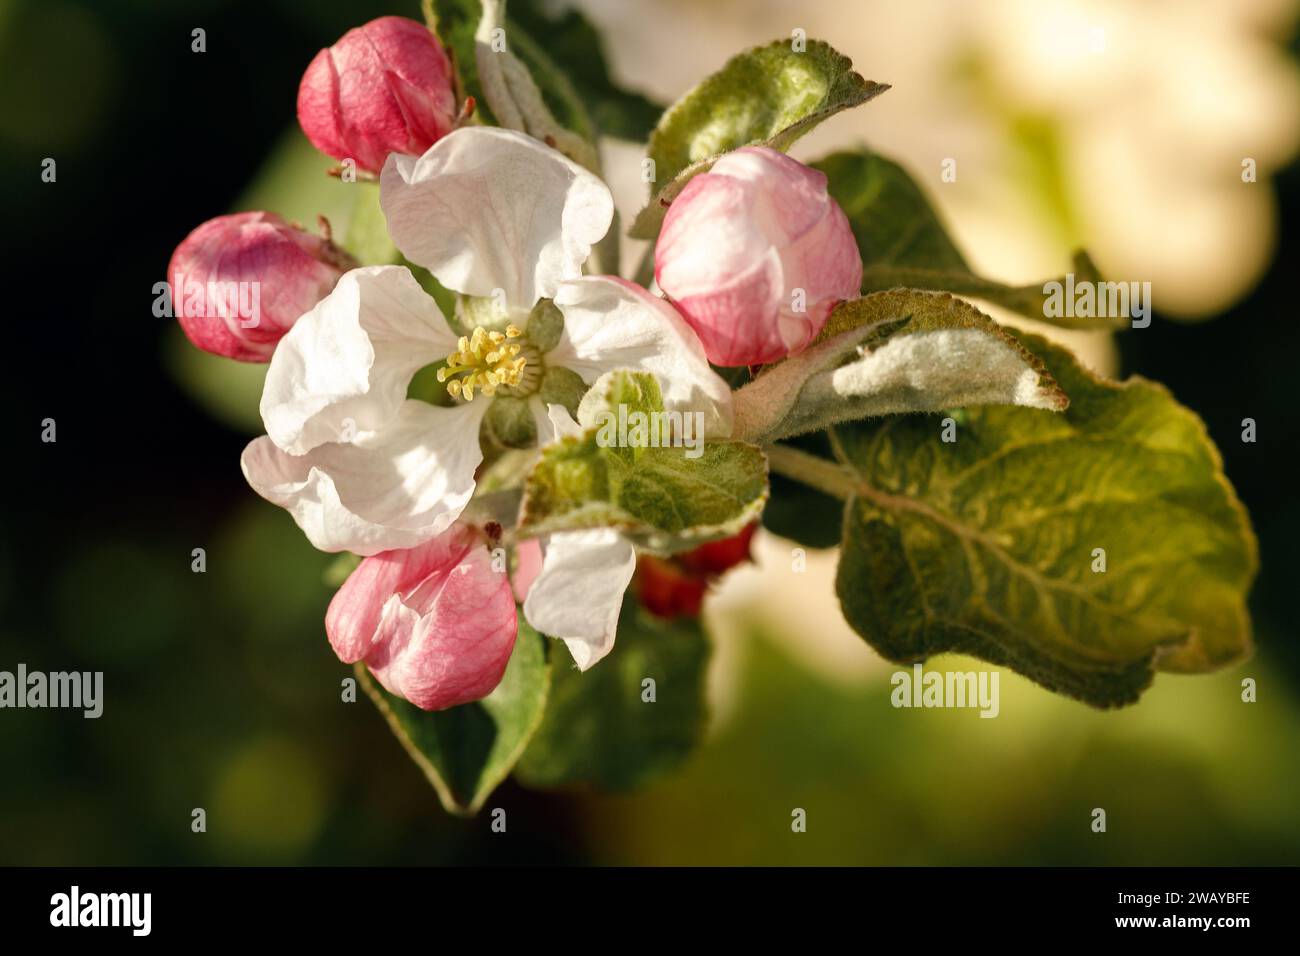 Una hermosa flor de manzana blanca sin abrir y cinco cogollos rosados a su alrededor. Foto de stock